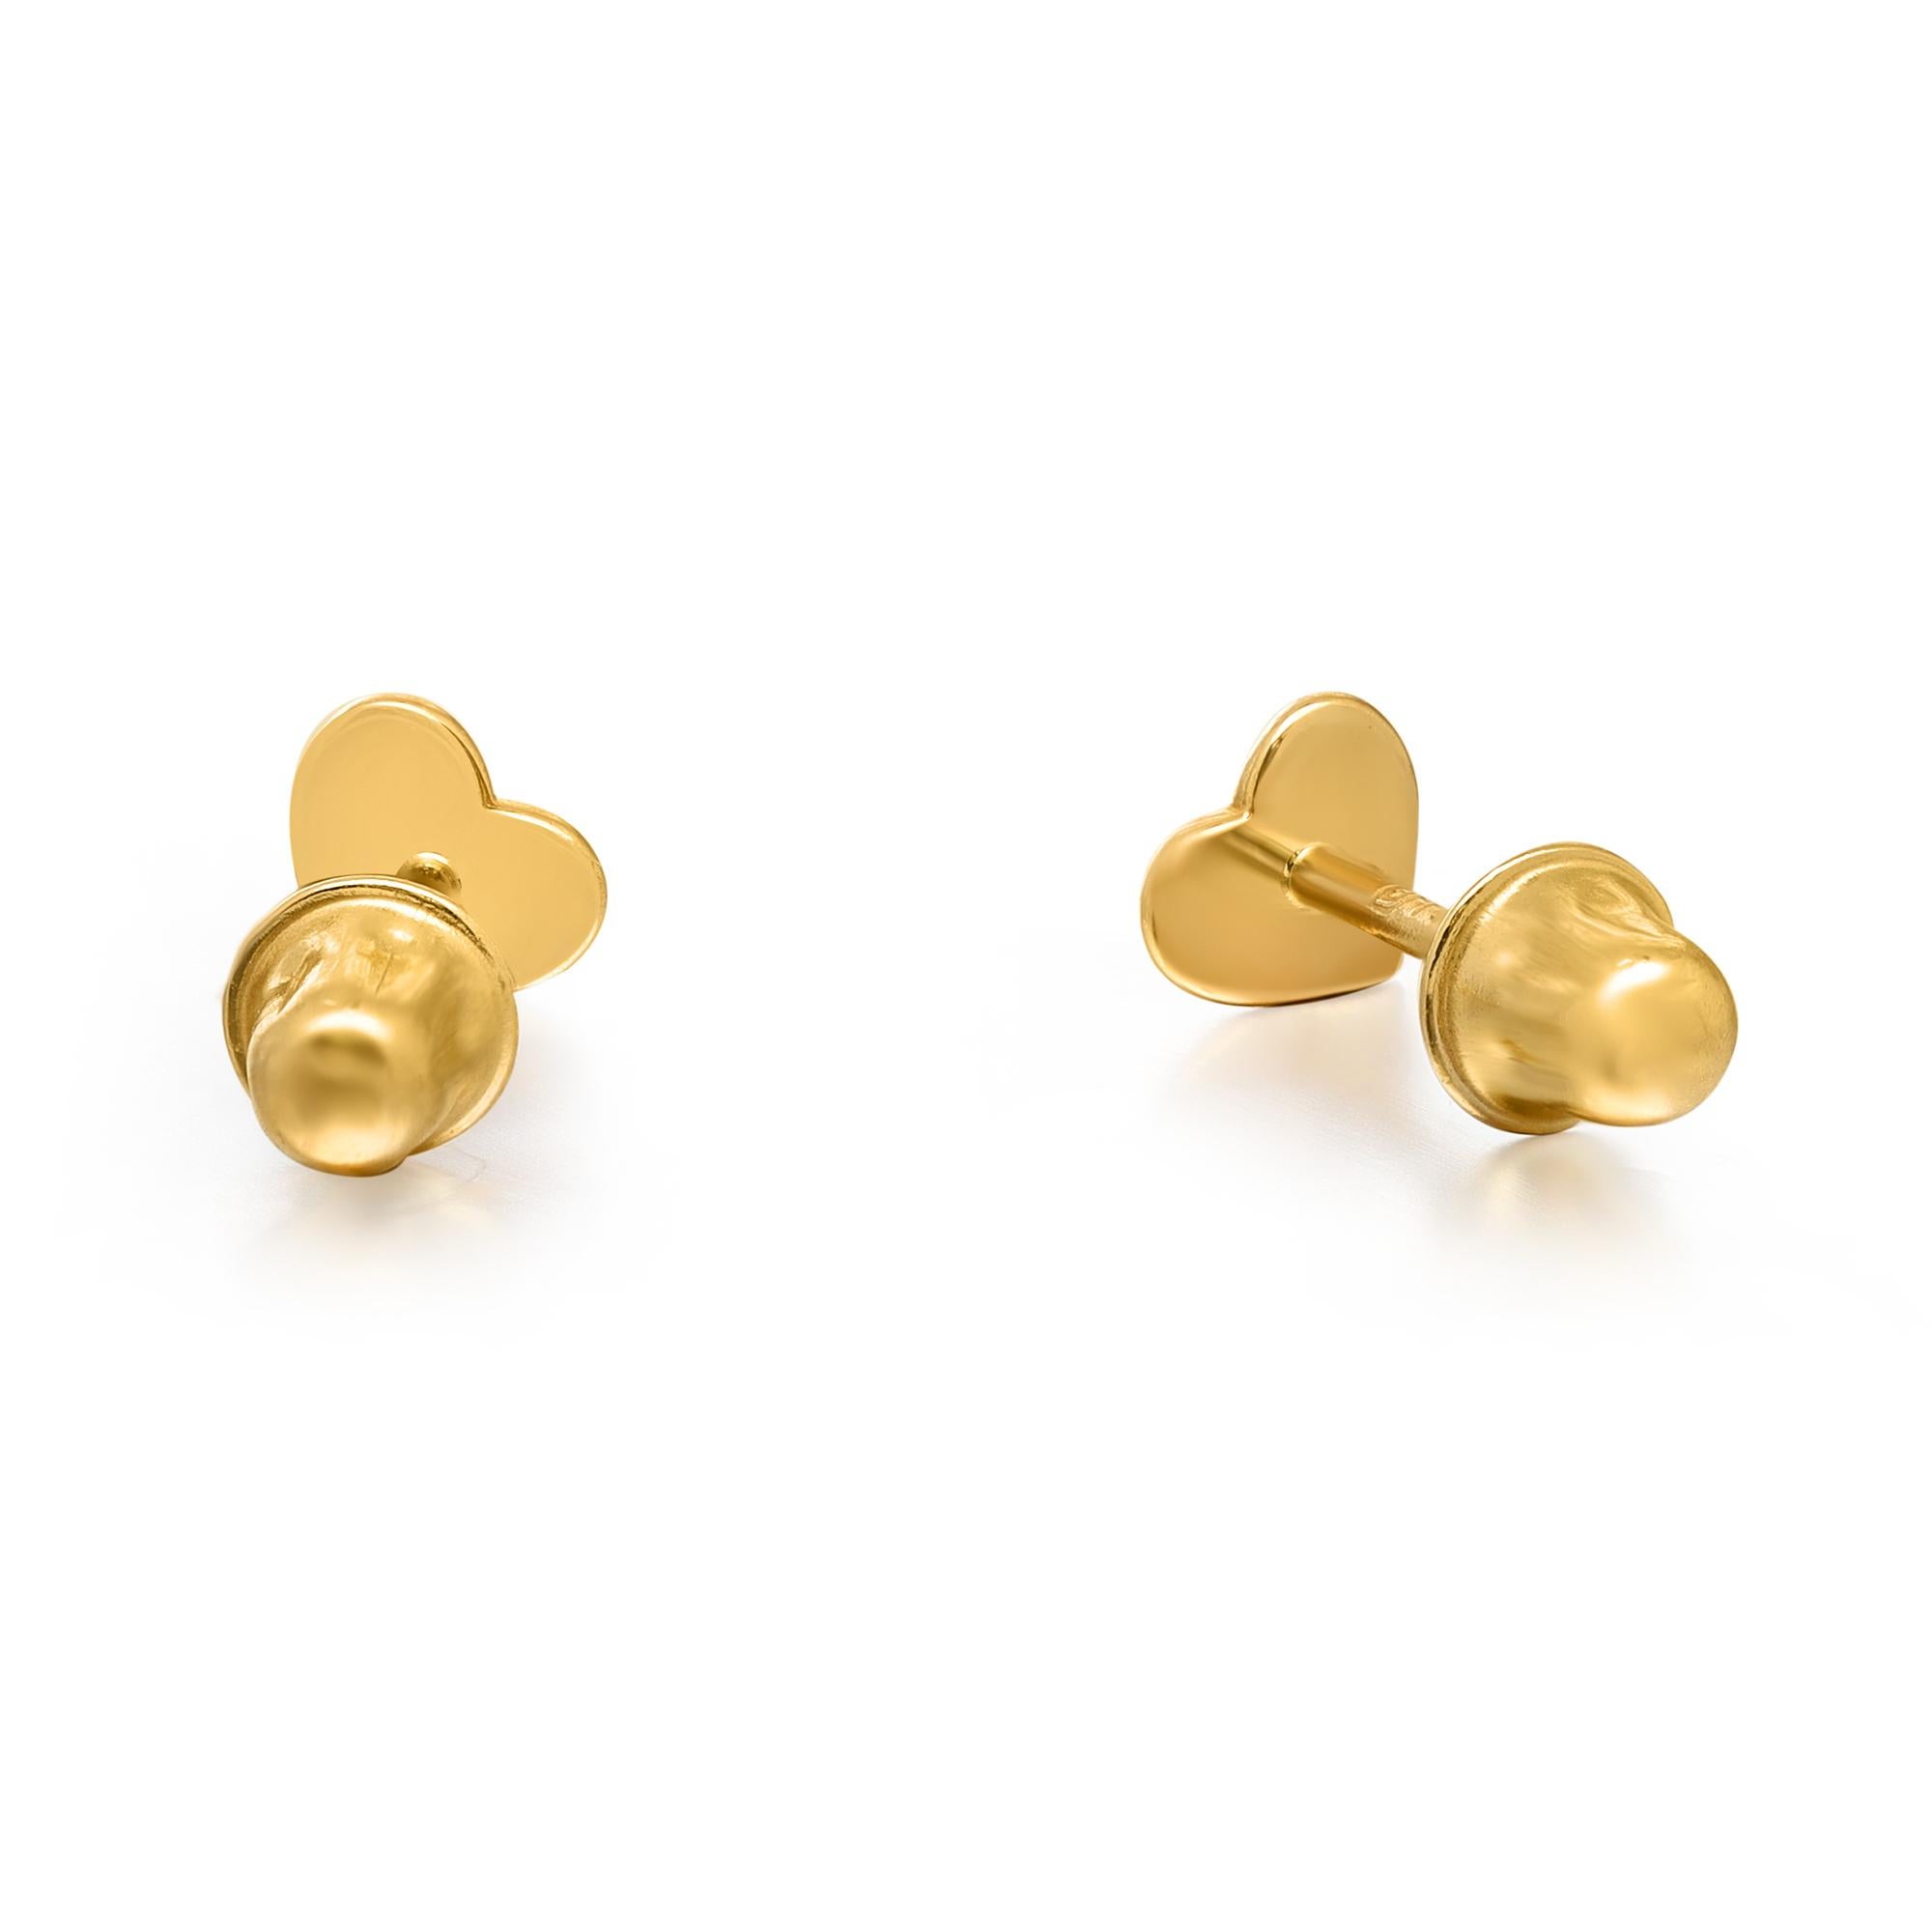 Modern Rachel Koen Tiny Heart Stud Earrings Screw Back 14K Yellow Gold For Sale